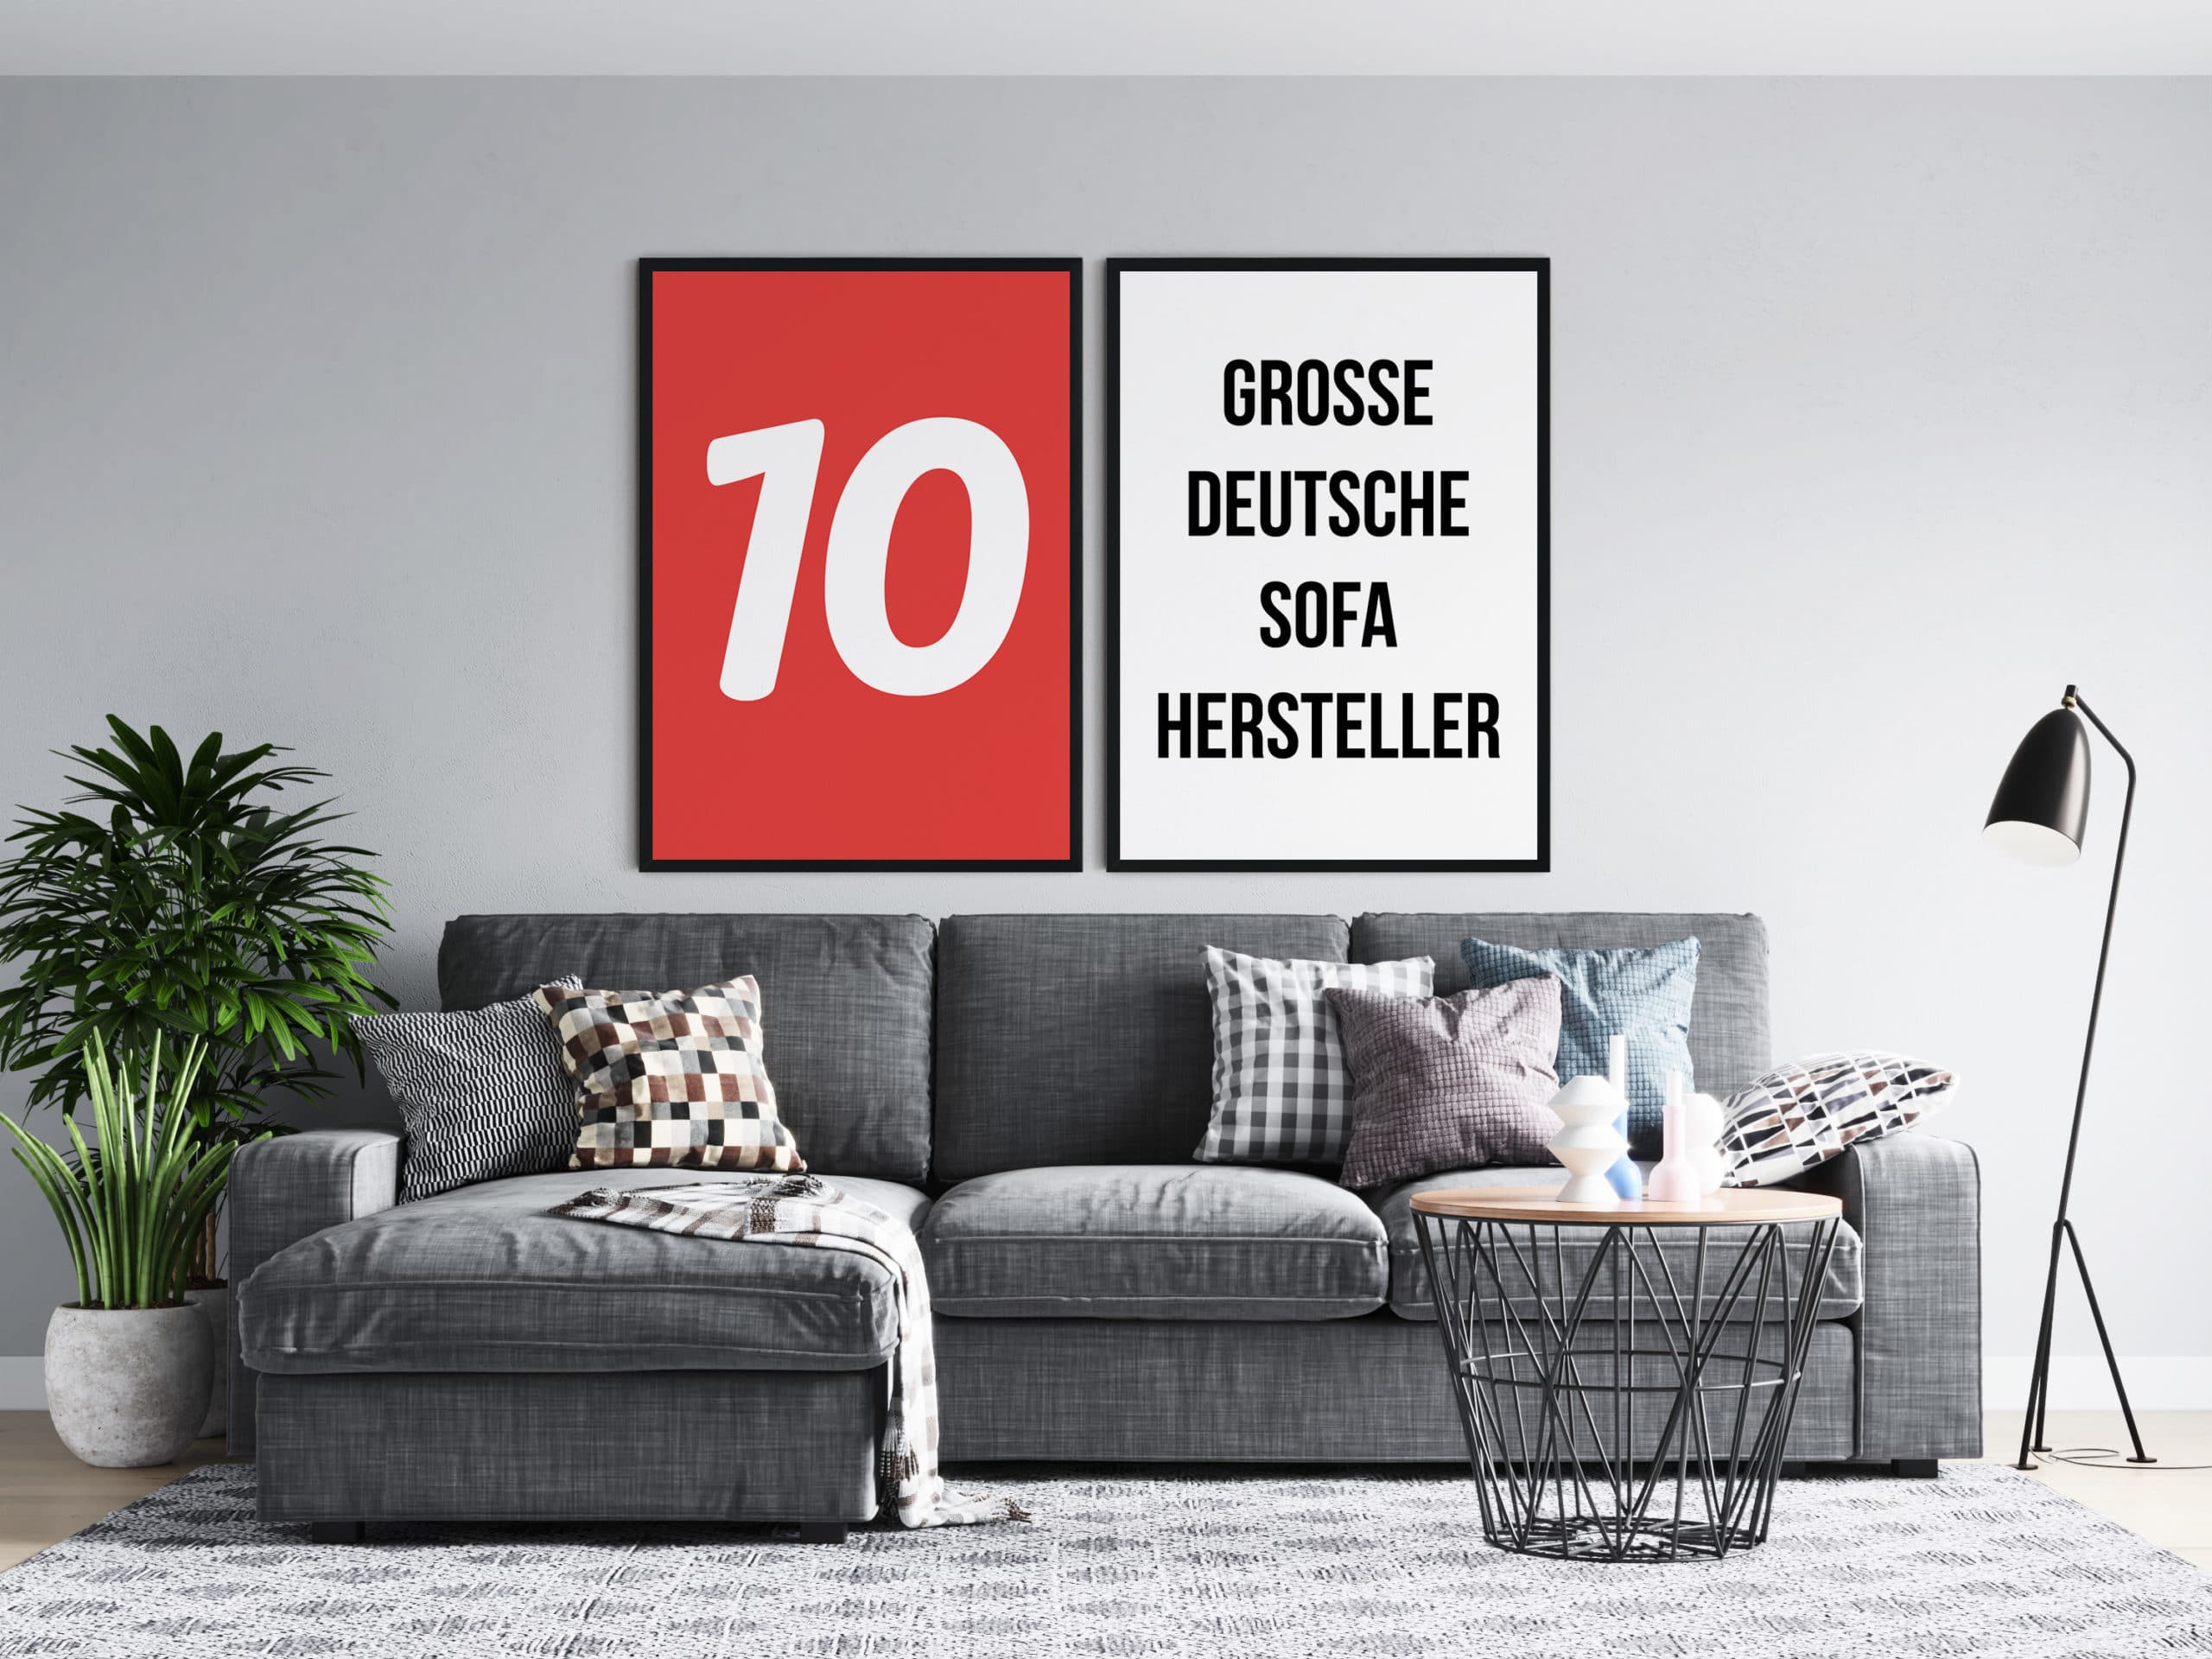 10 große deutsche sofa hersteller im marken check